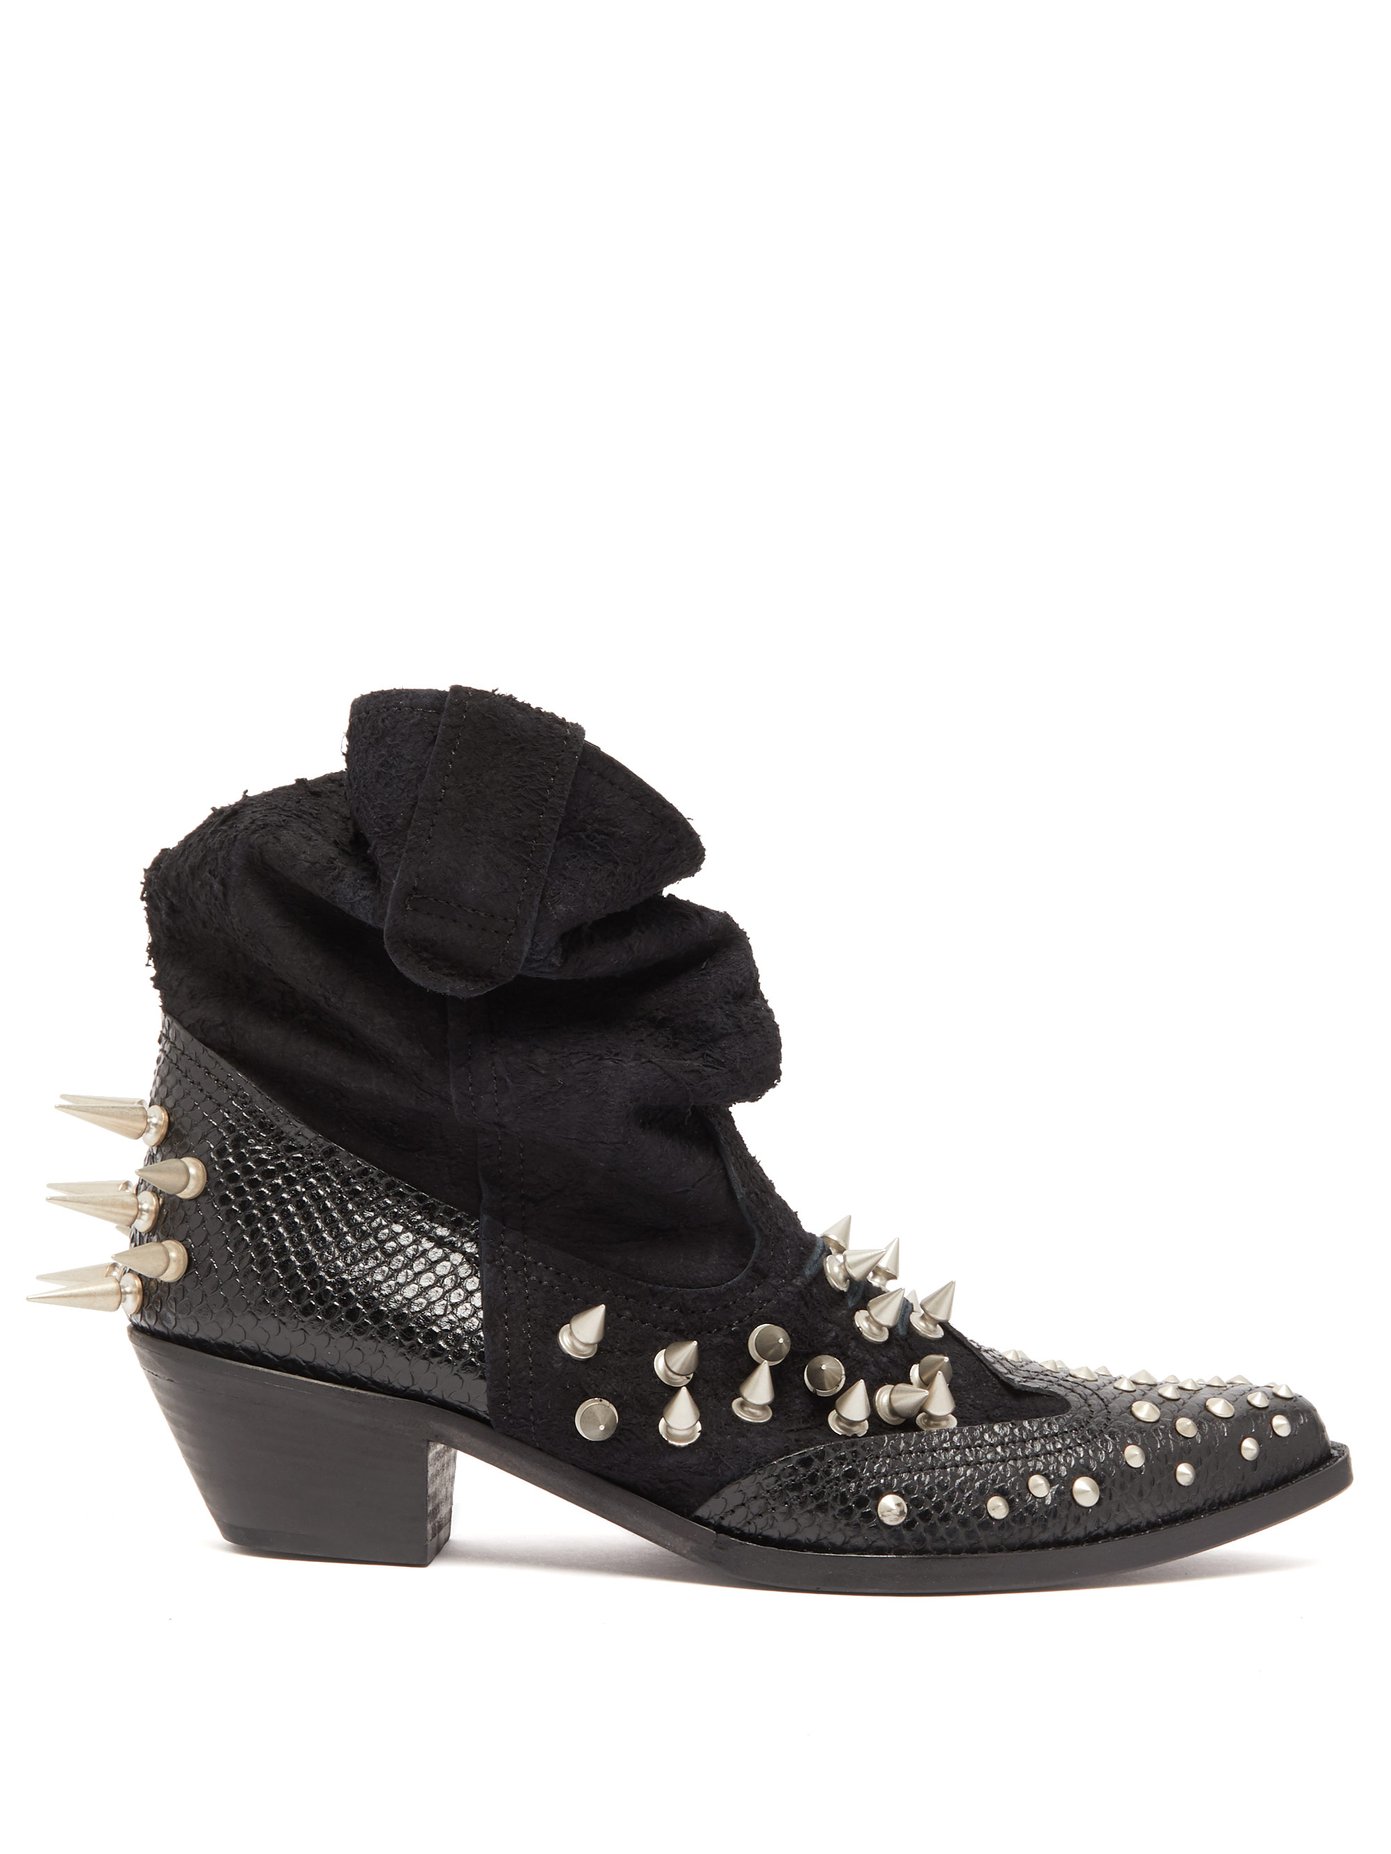 chelsea boots formal wear